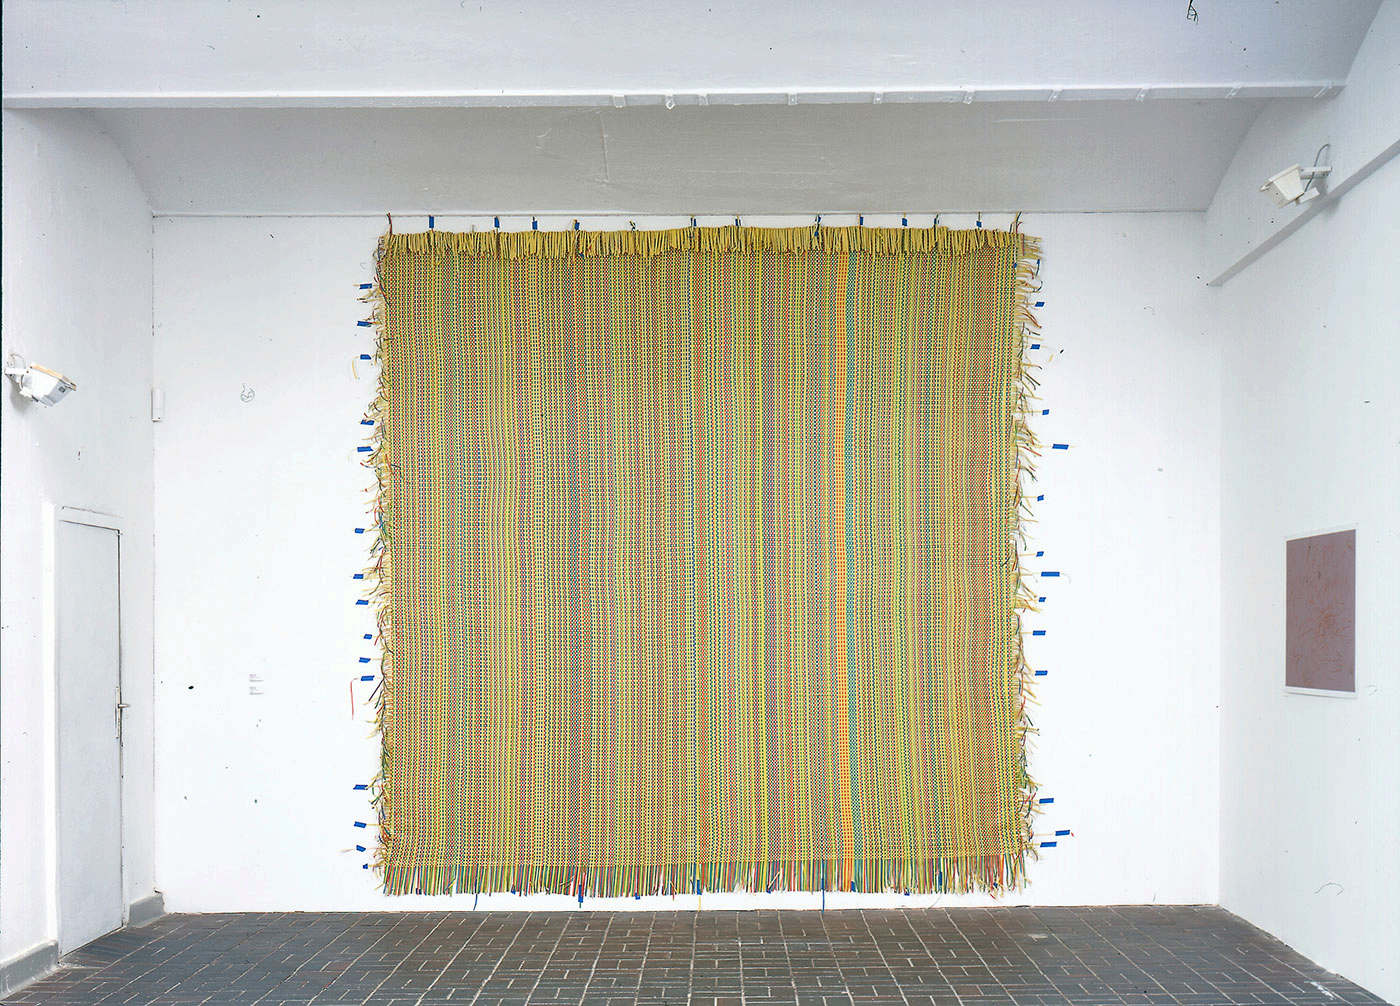  Luftschlangen, 350x350,  Zuendflaeche,  Heike Klussmann,  K W Institutefor Contempory Art,  Berlin